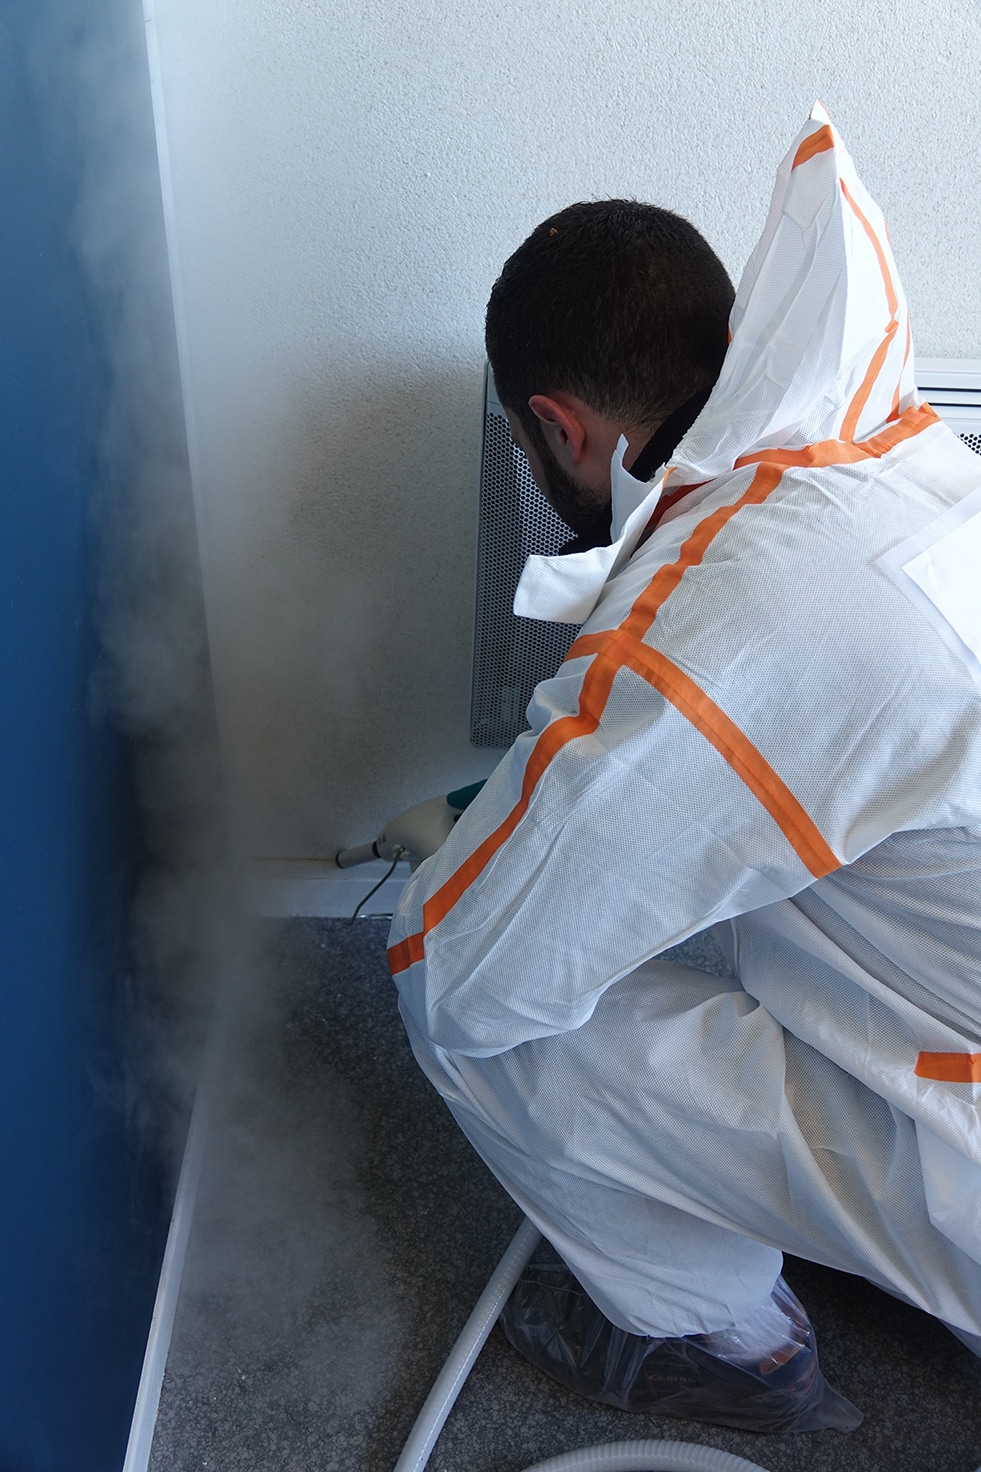 Technicien Bioneo en combinaison applique de la vapeur dans un coin d'une chambre pour exterminer les punaises de lit | BIONEO